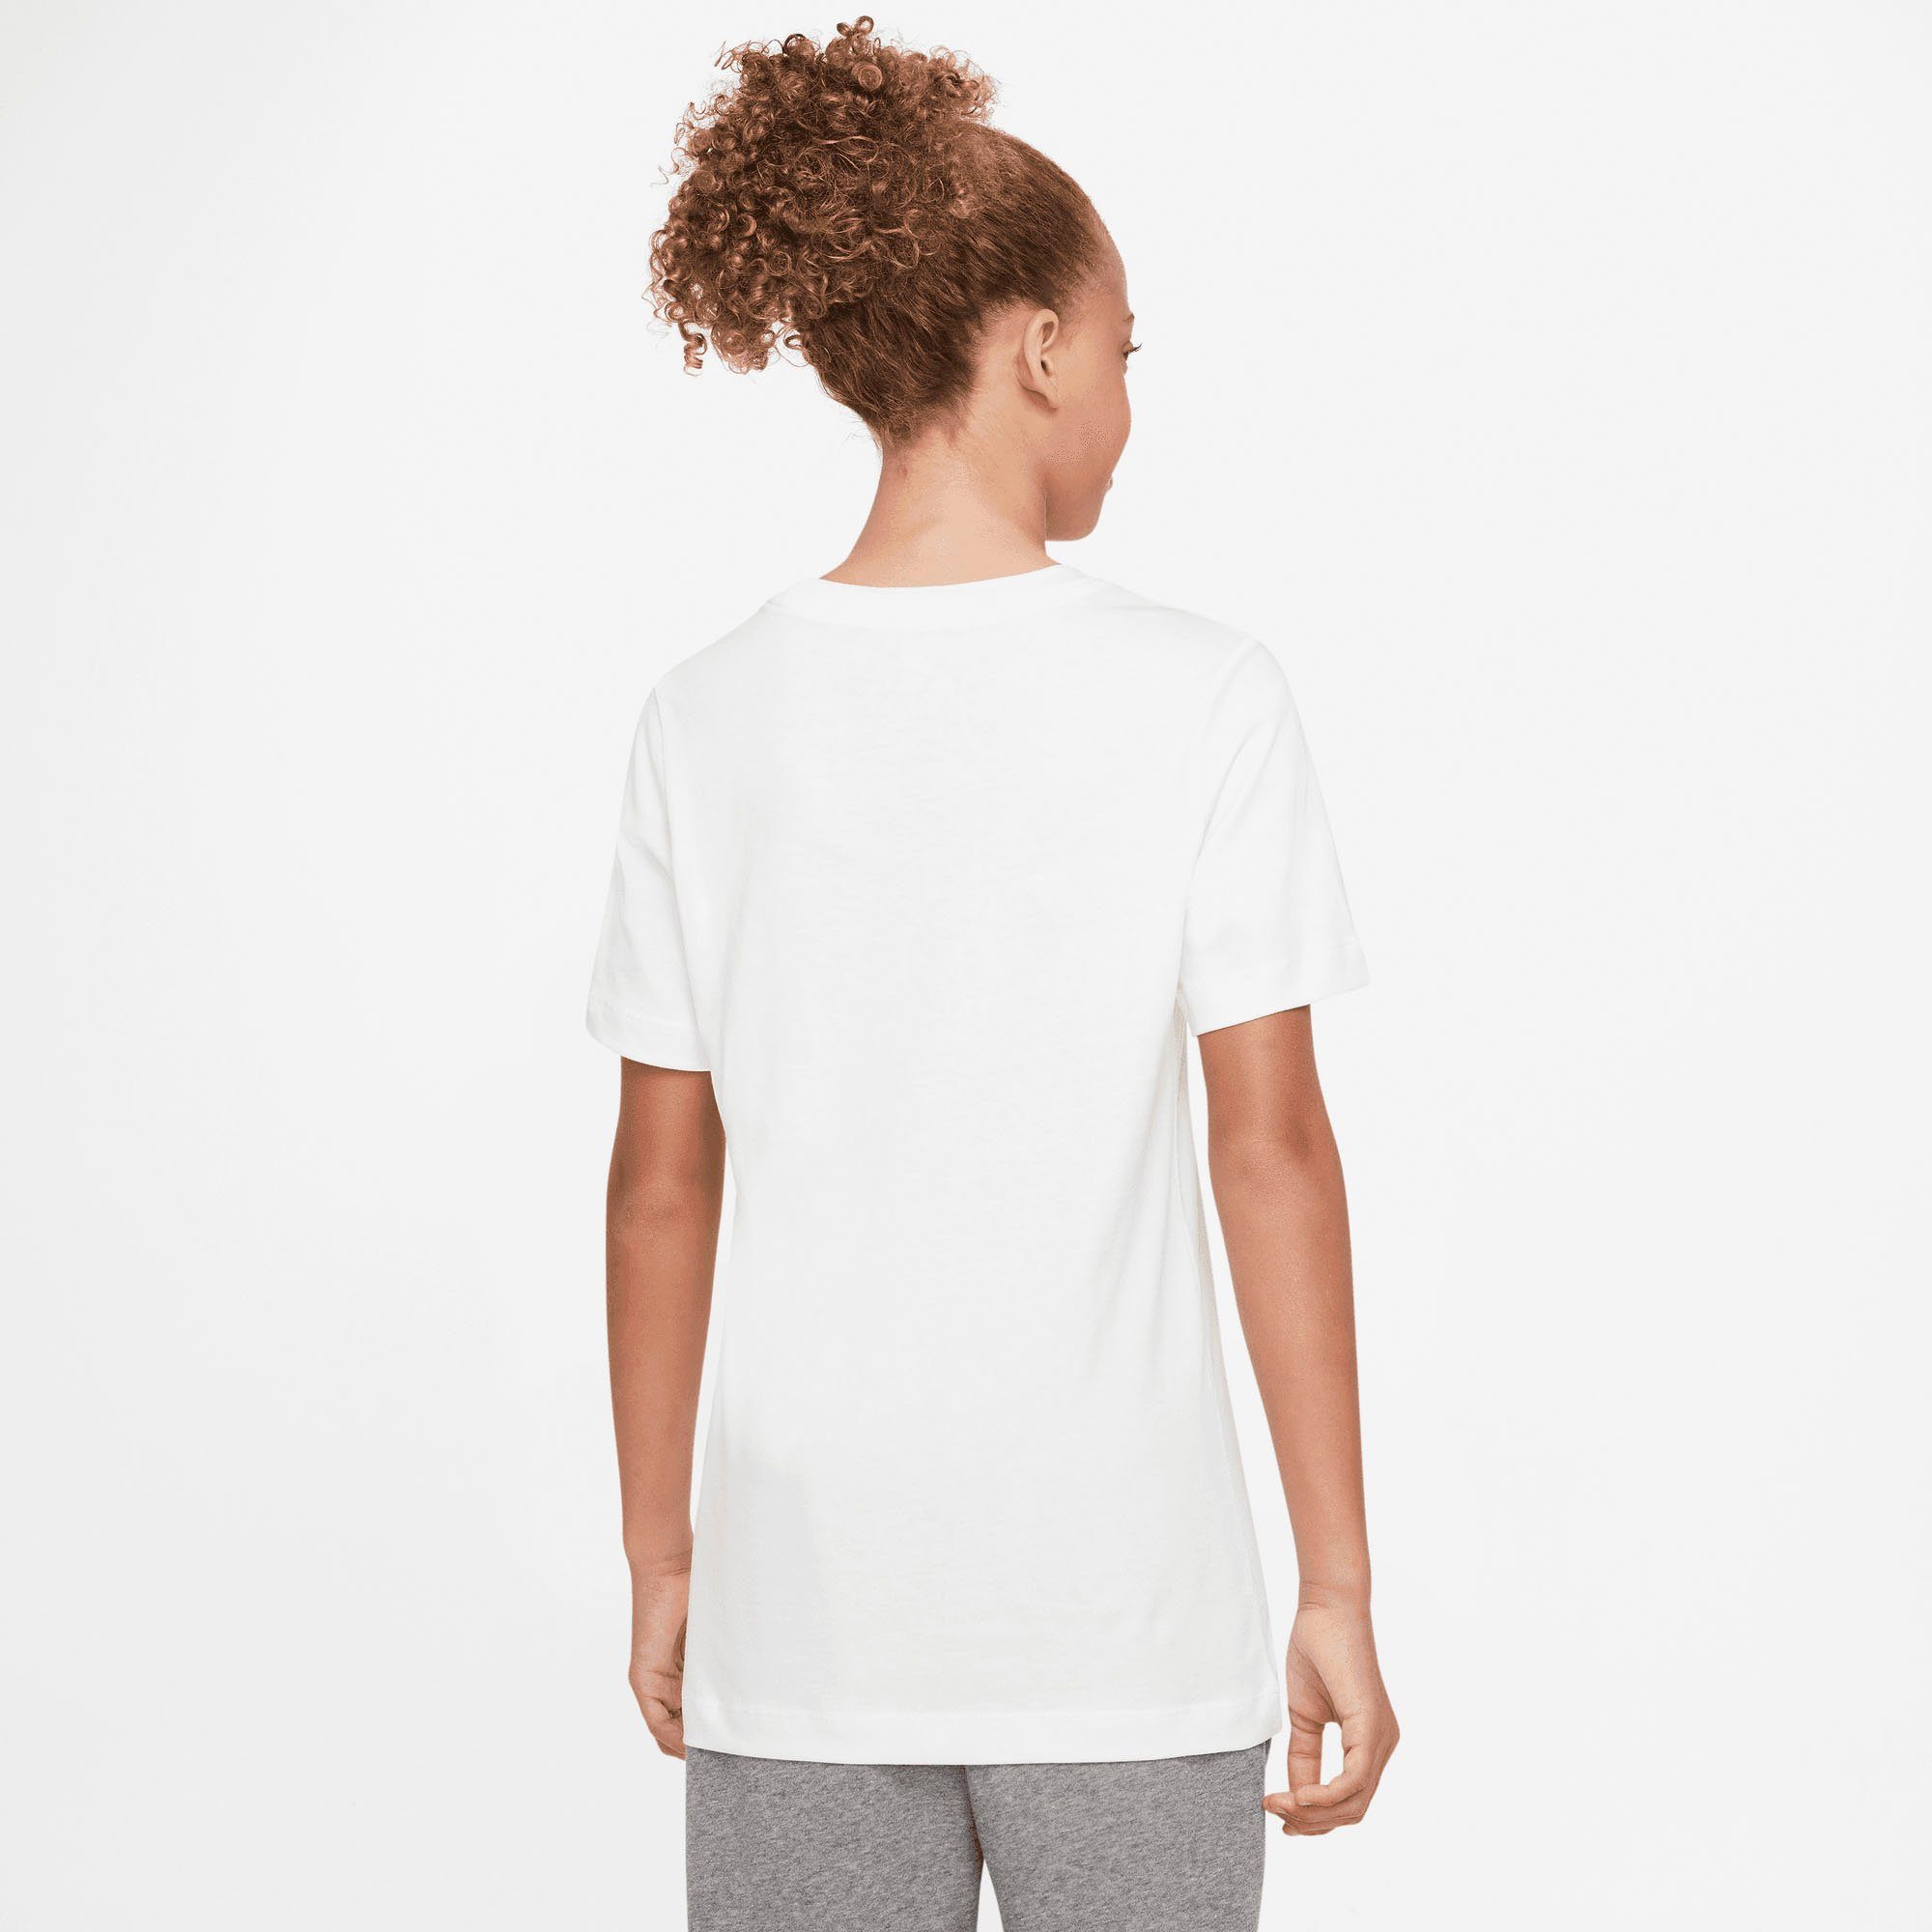 Nike Sportswear T-Shirt weiß Kids' Big T-Shirt